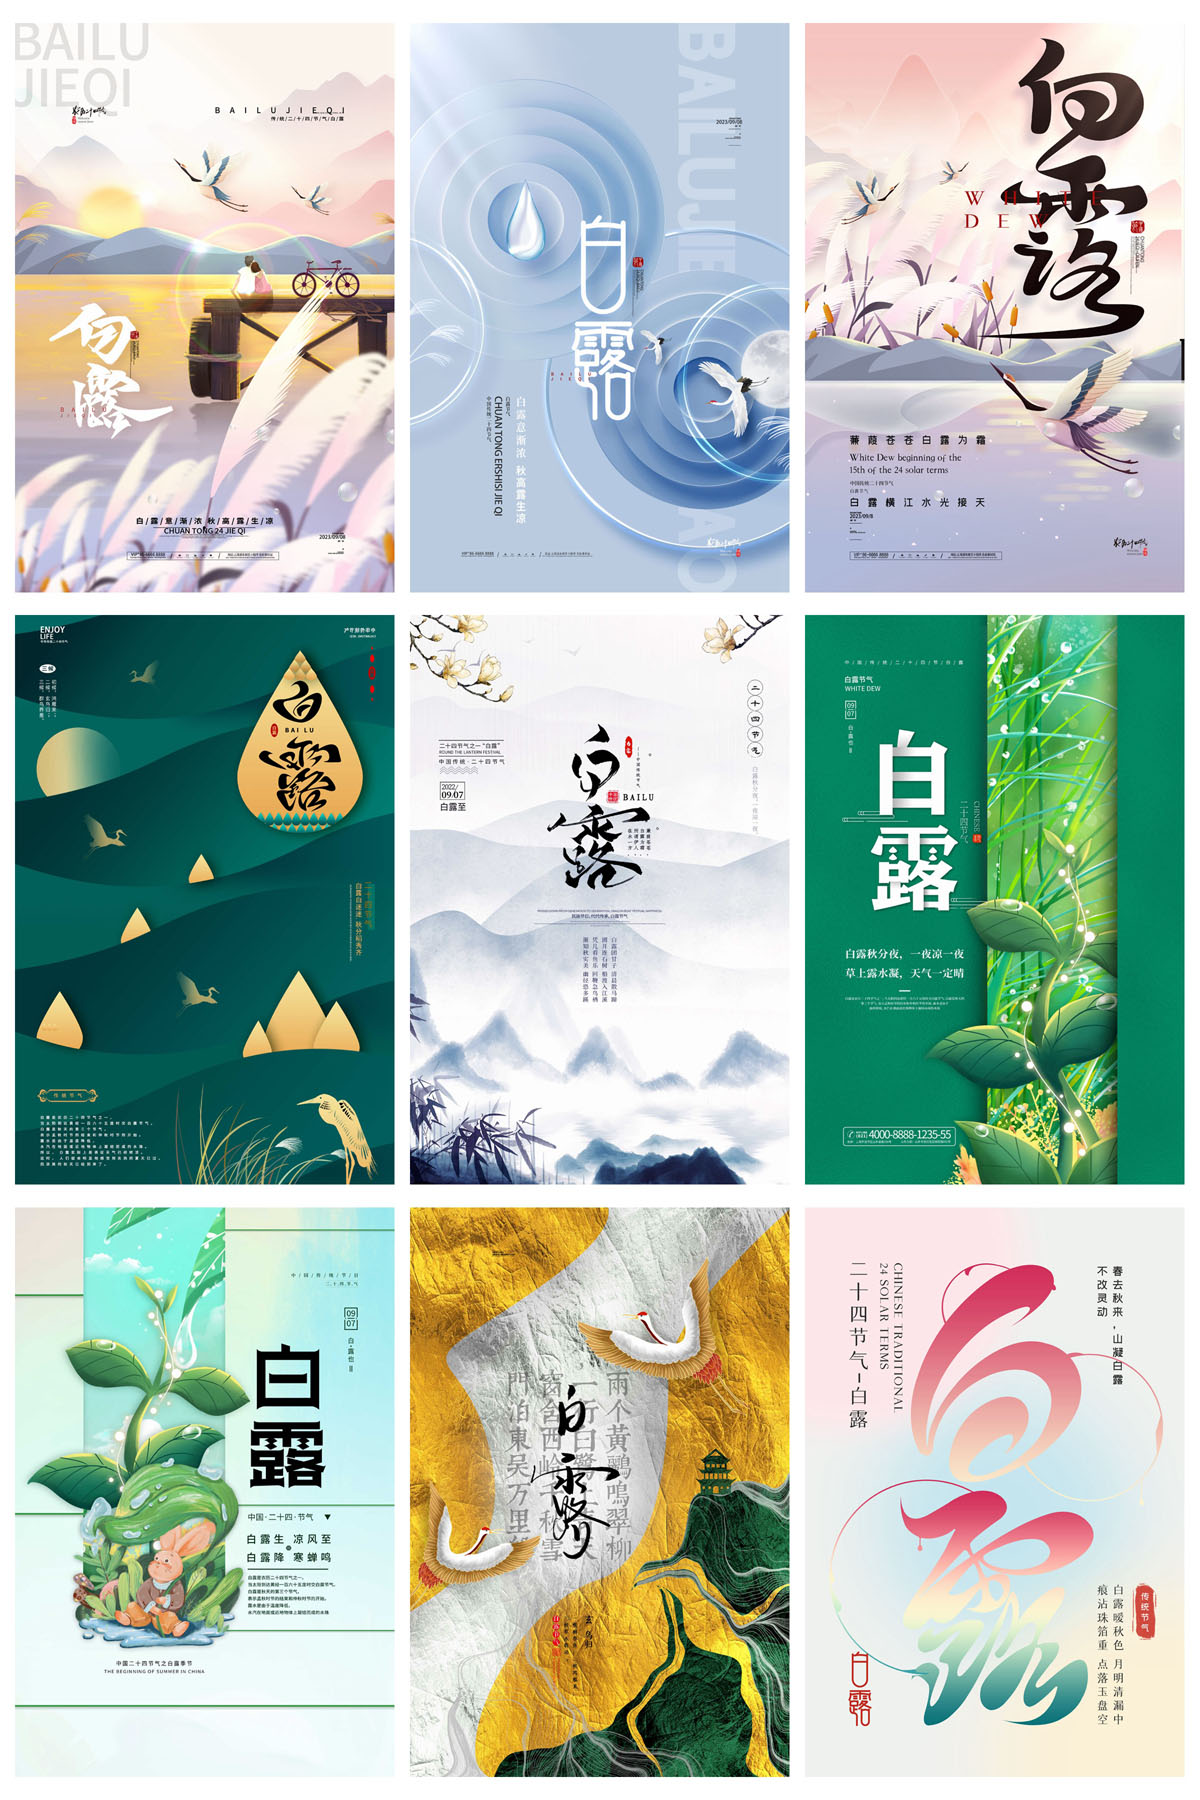 54款中国风24节气白露宣传海报PSD模板 设计素材 第5张